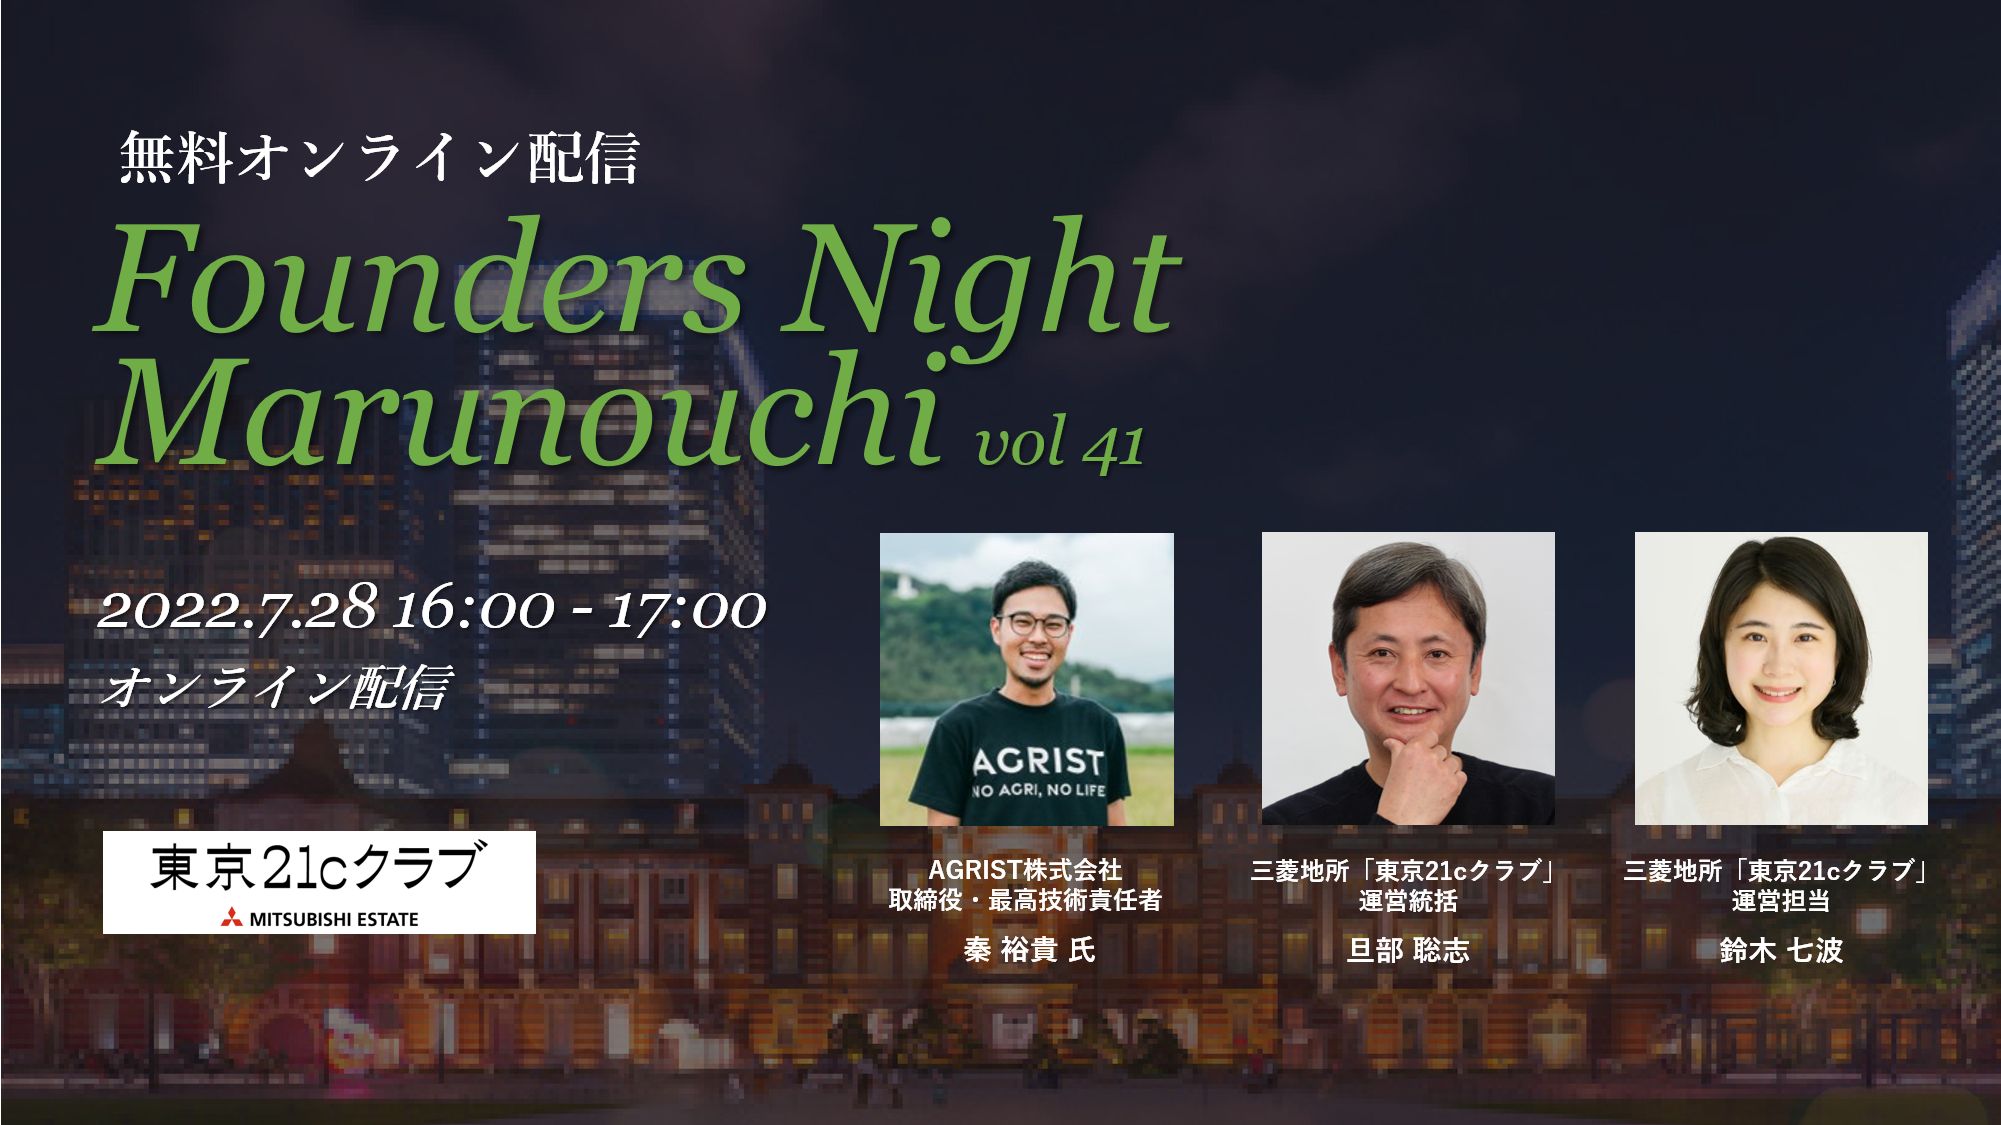 (日本語) Founders Night Marunouchi #41<br>AGRIST 代表取締役社長兼CTO 秦裕貴さん編<br>2022/7/28 オンライン開催